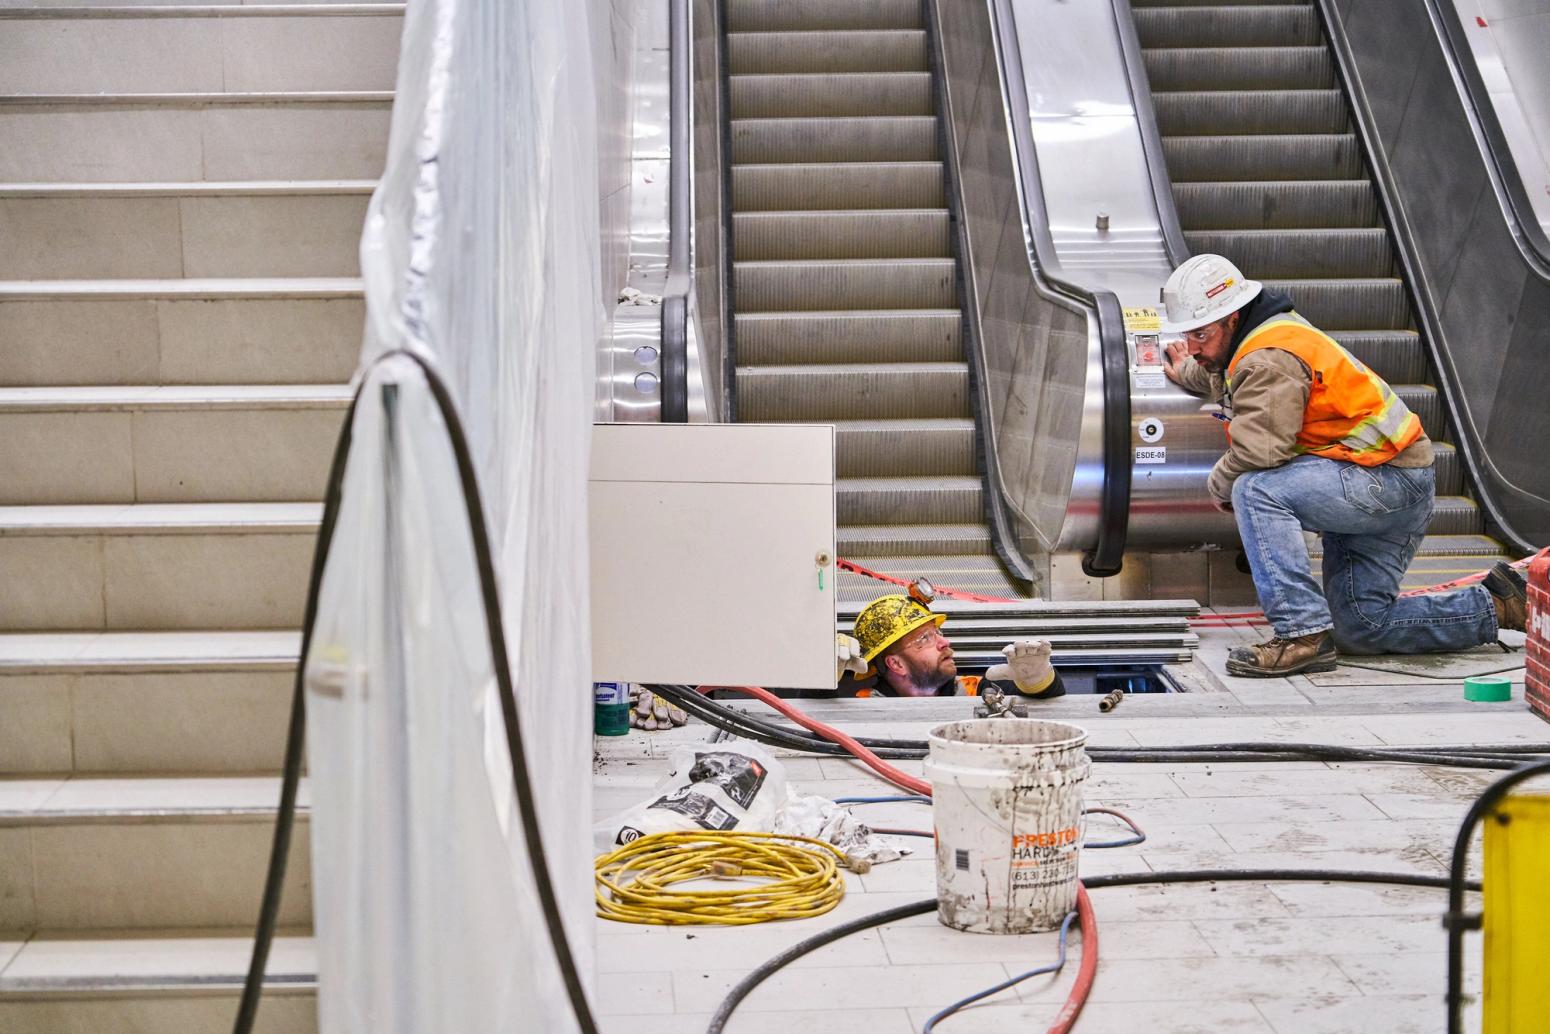 Workers installing escalator